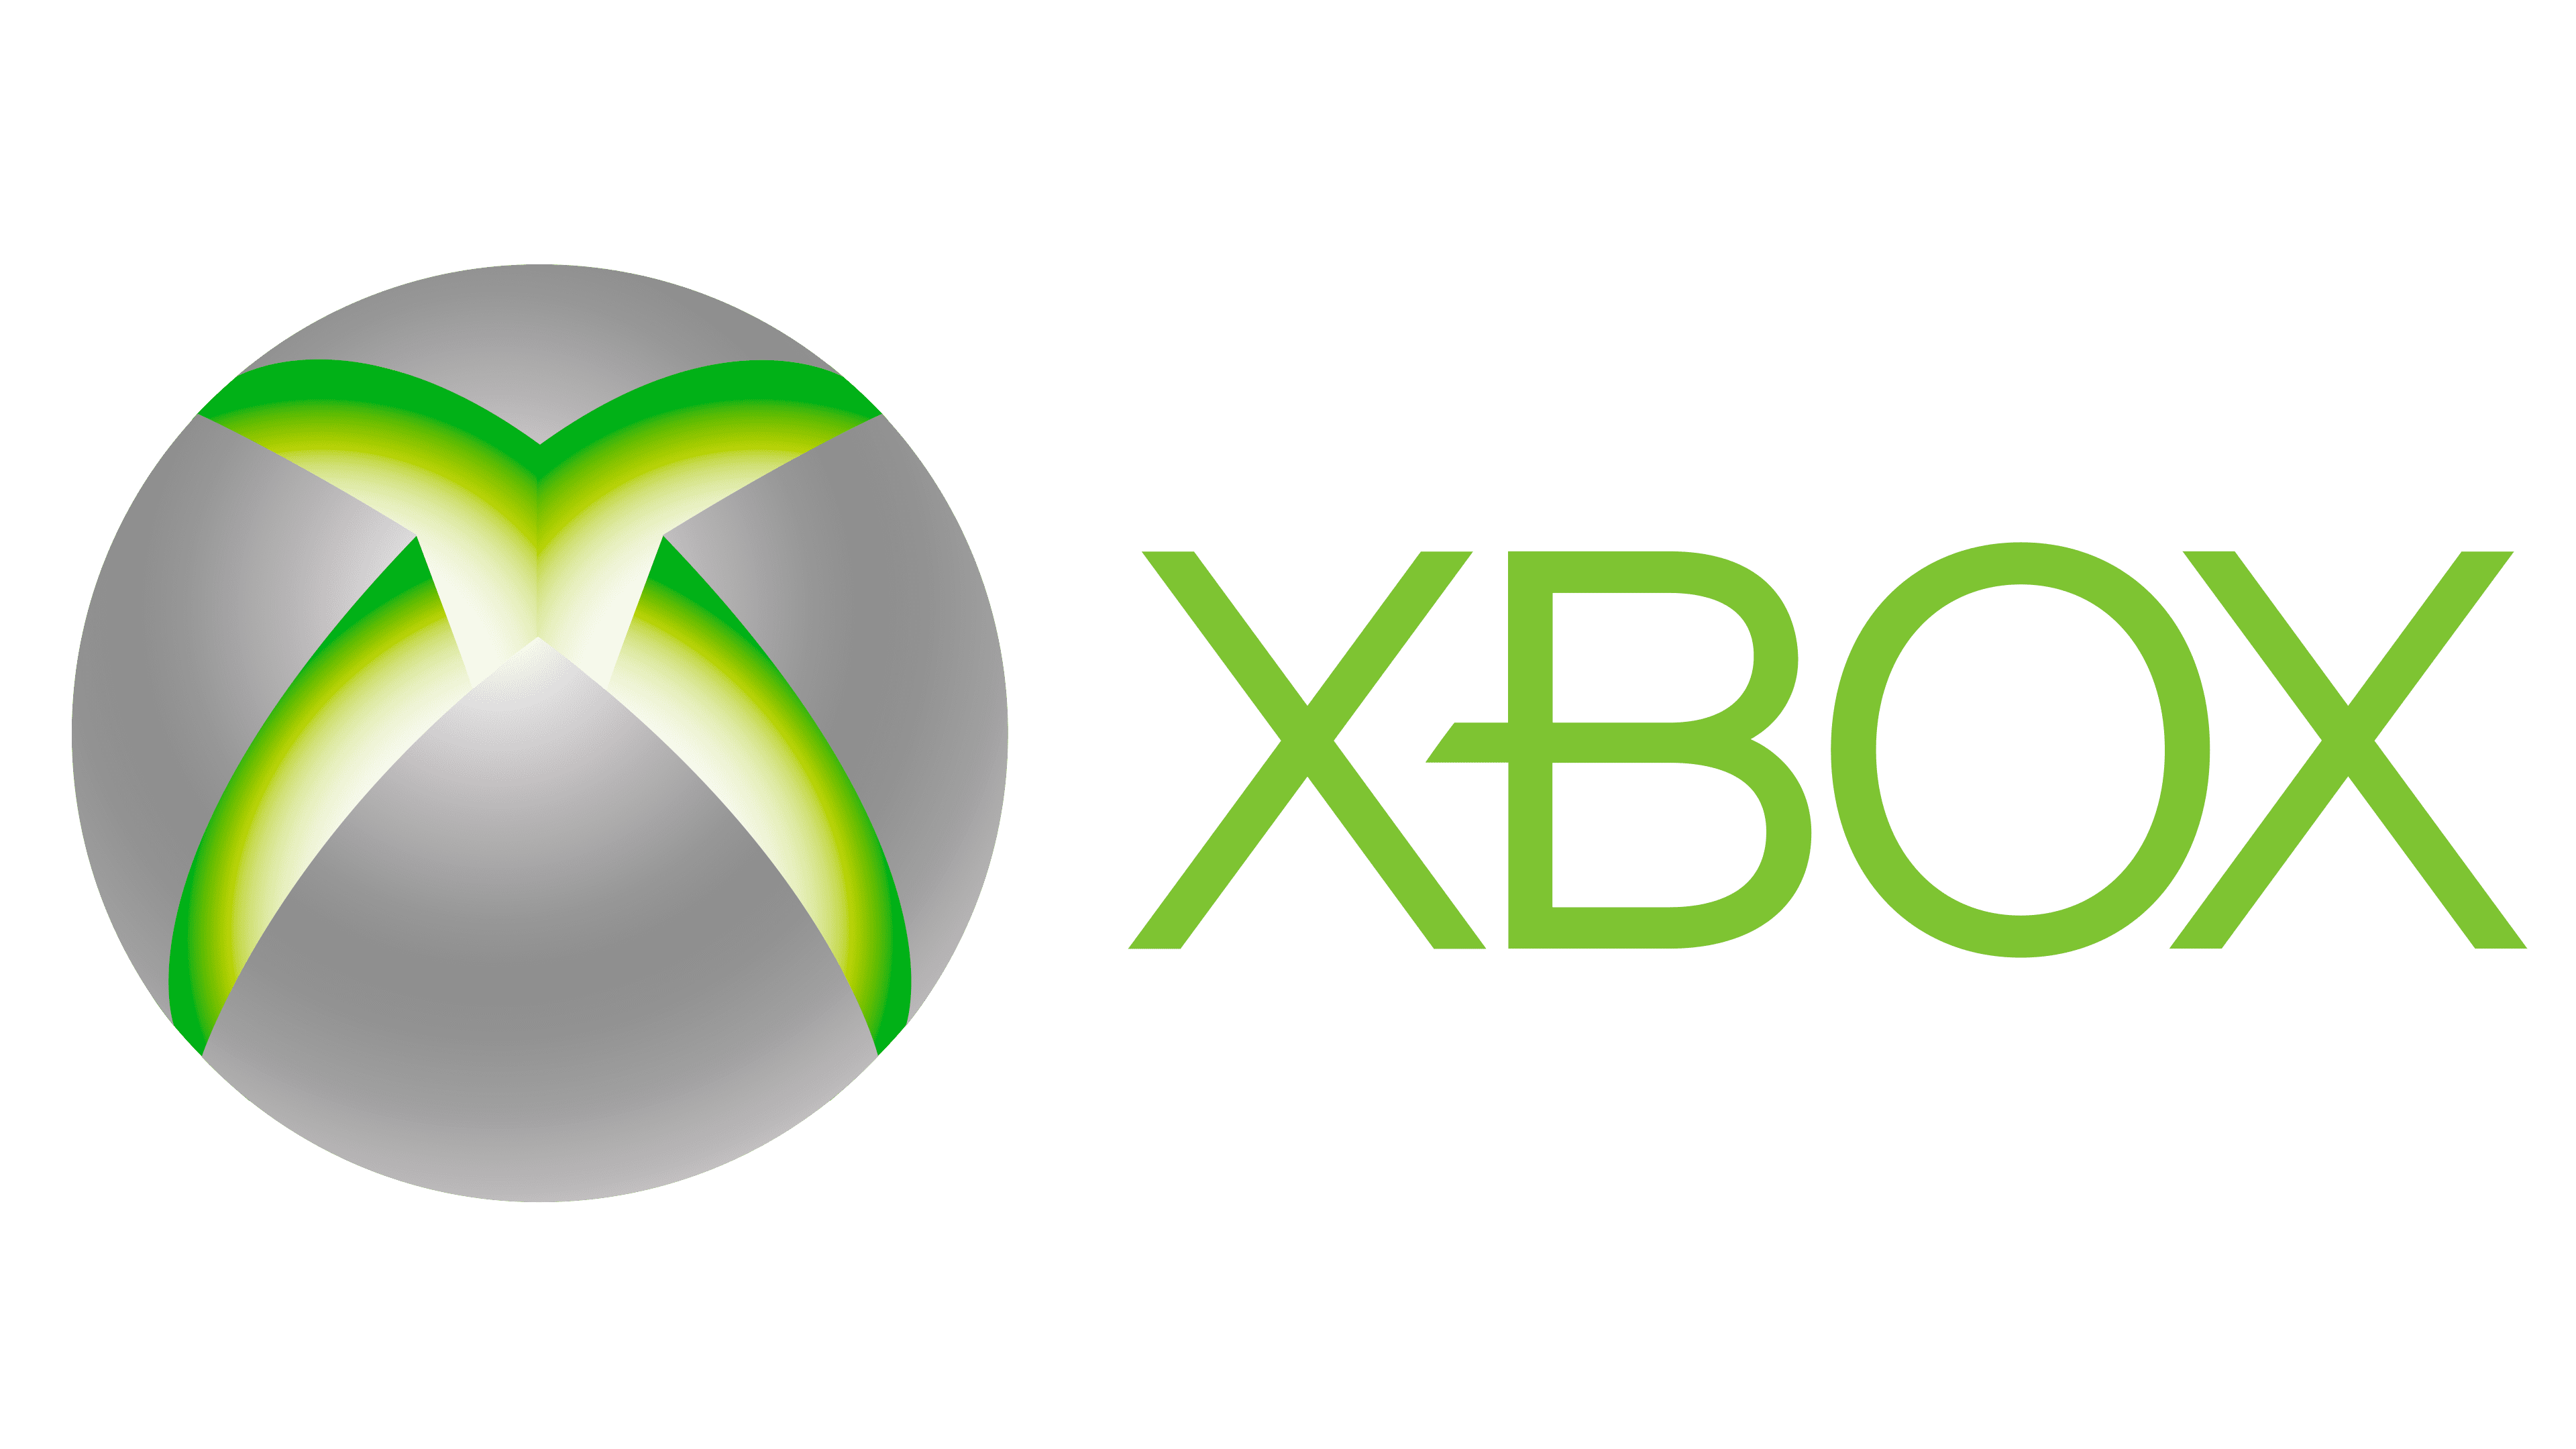 Логотип хбокс 360. Xbox 2001 logo. Xbox 360 logo 2010. Xbox logo 1x1. Xbox company